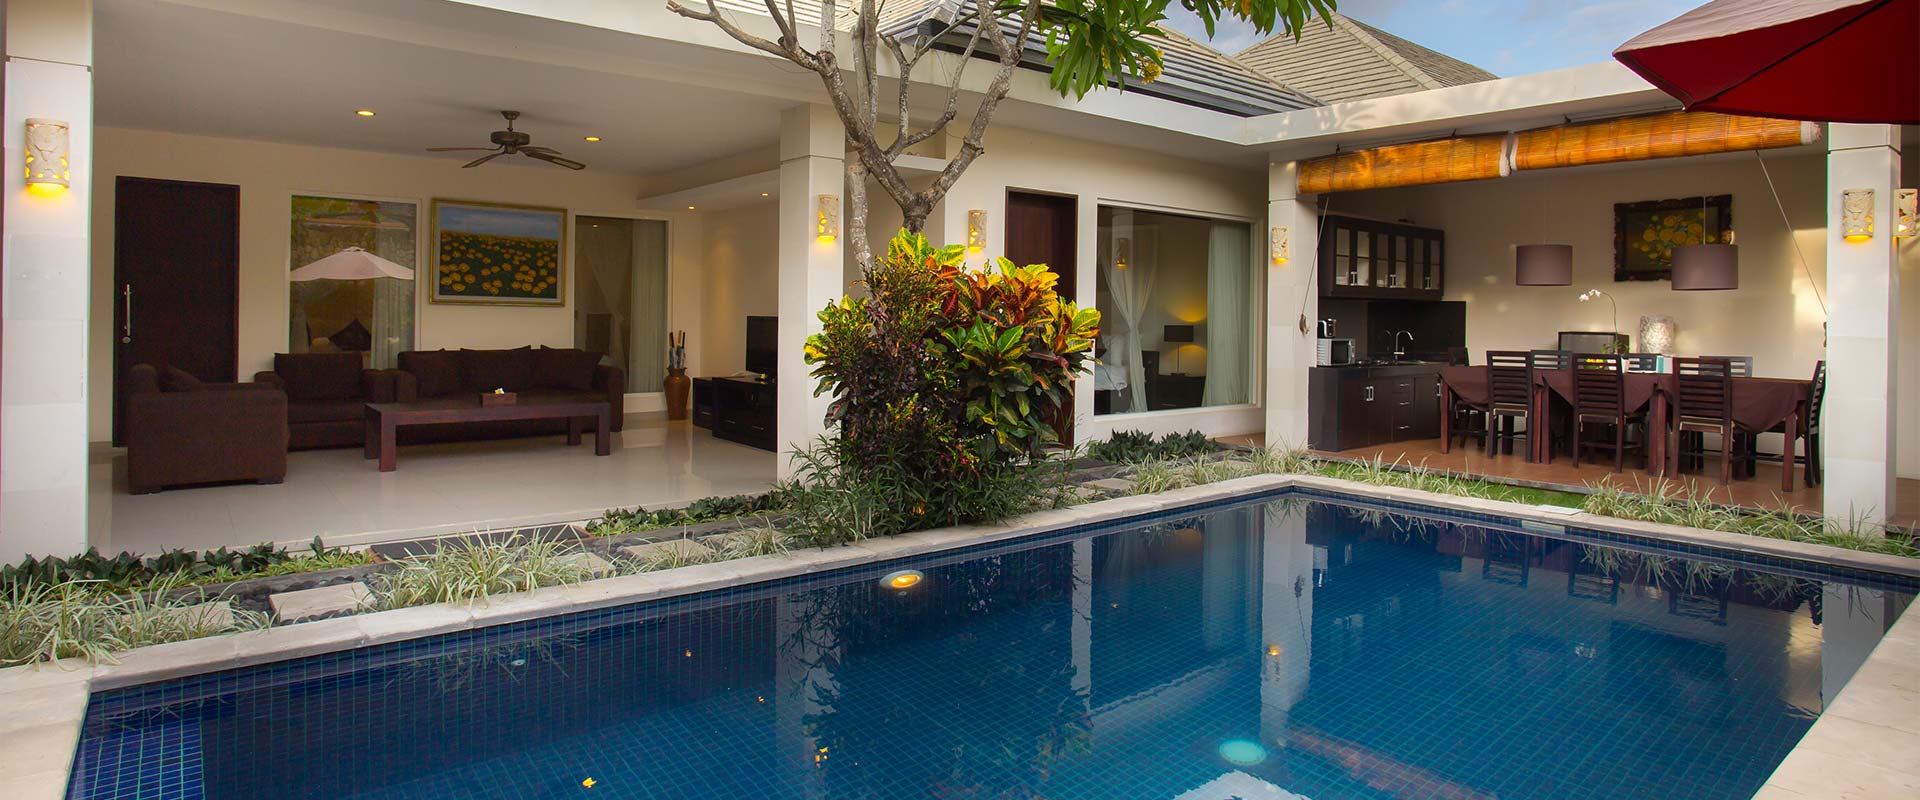 4 Bedrooms Bali Yubi Villas